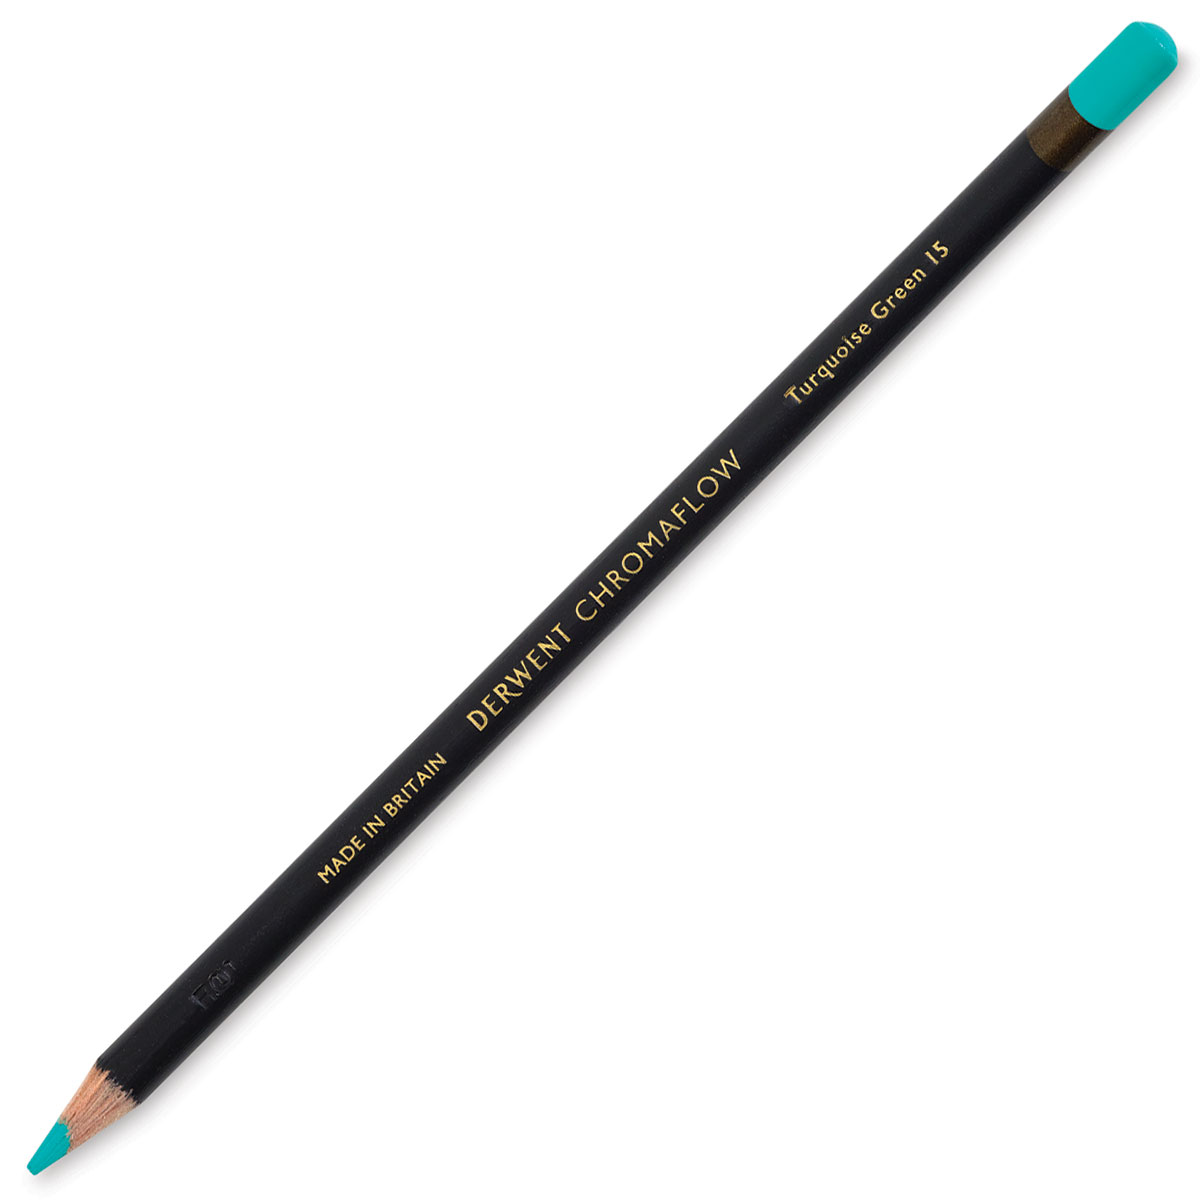 Derwent Chromaflow Colored Pencil Sets